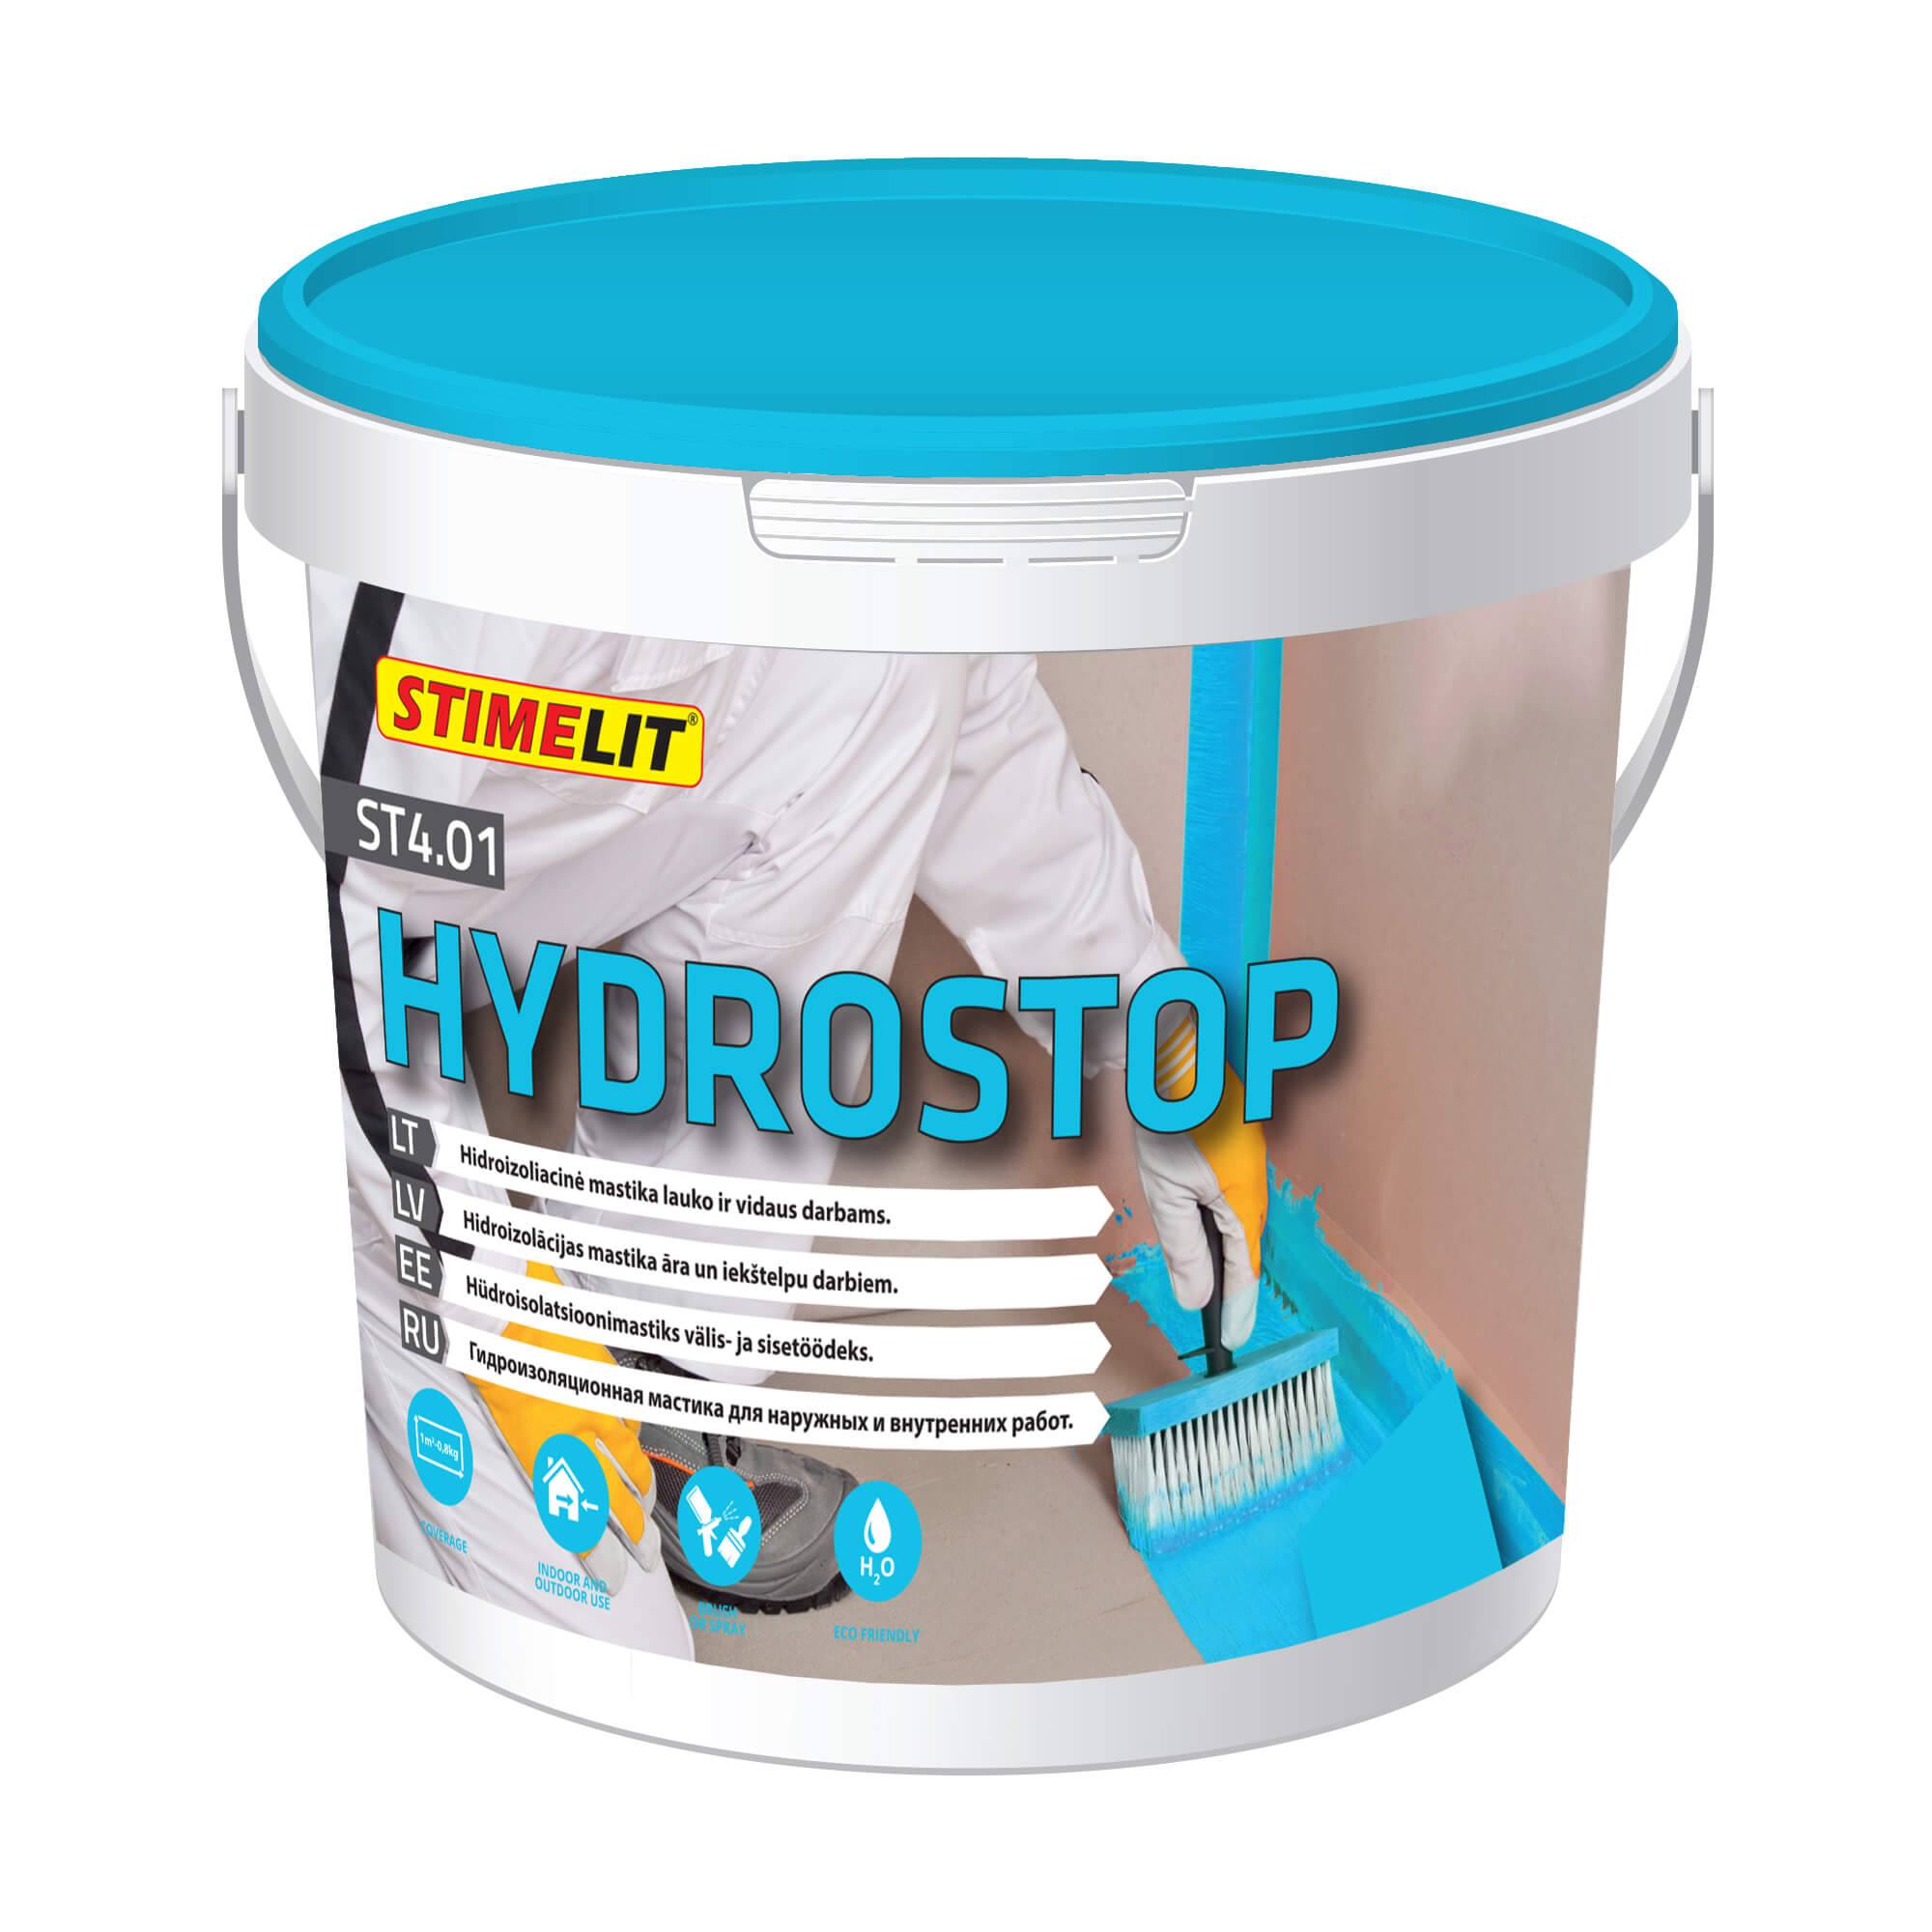 ST4.01 HYDROSTOP Hüdroisolatsioonimass välis- ja sisetingimustes kasutamiseks